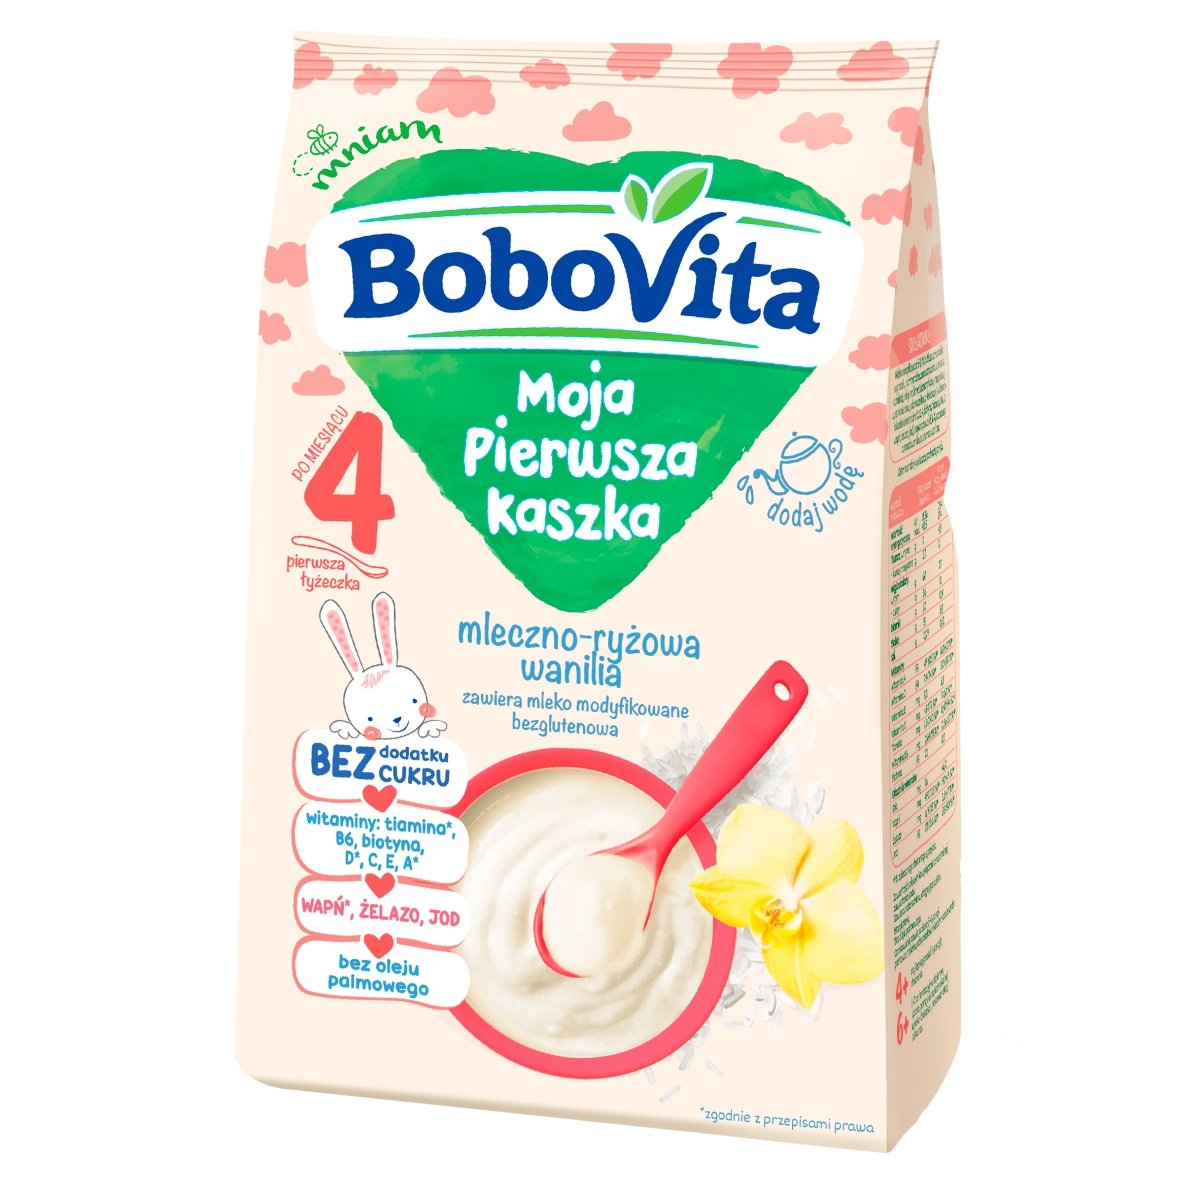 Nutricia BOBOVITA BoboVita Moja Pierwsza Kaszka mleczno-ryżowa wanilia, 230g